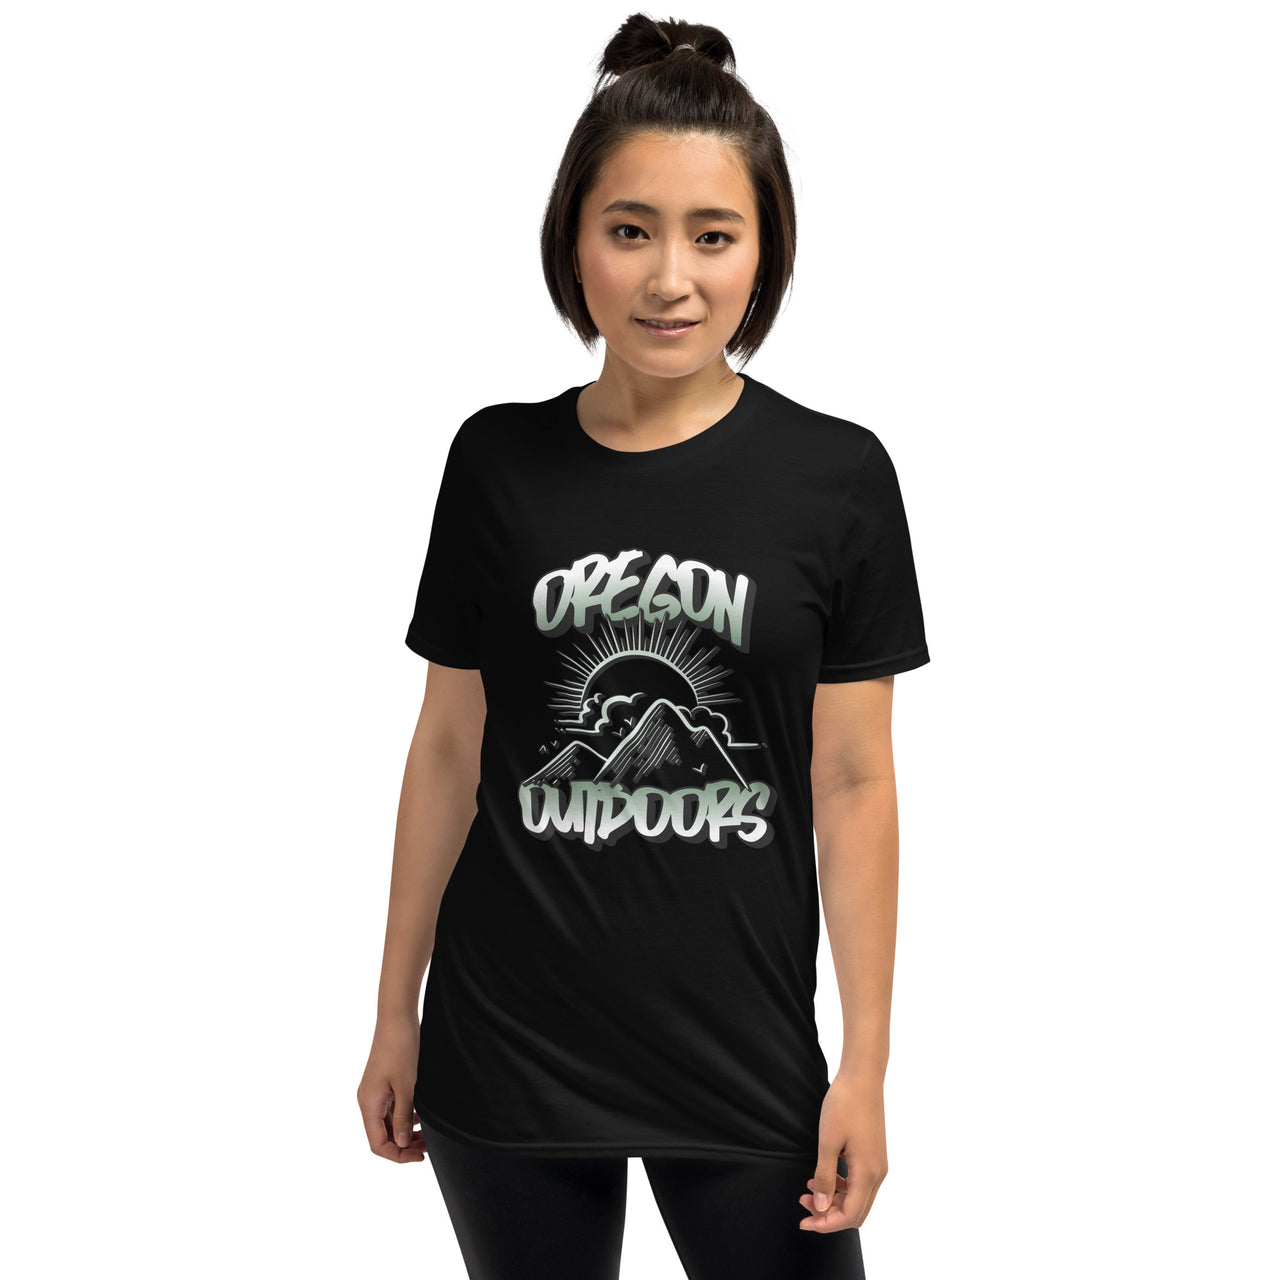 Oregon Outdoors - Unisex T-Shirt